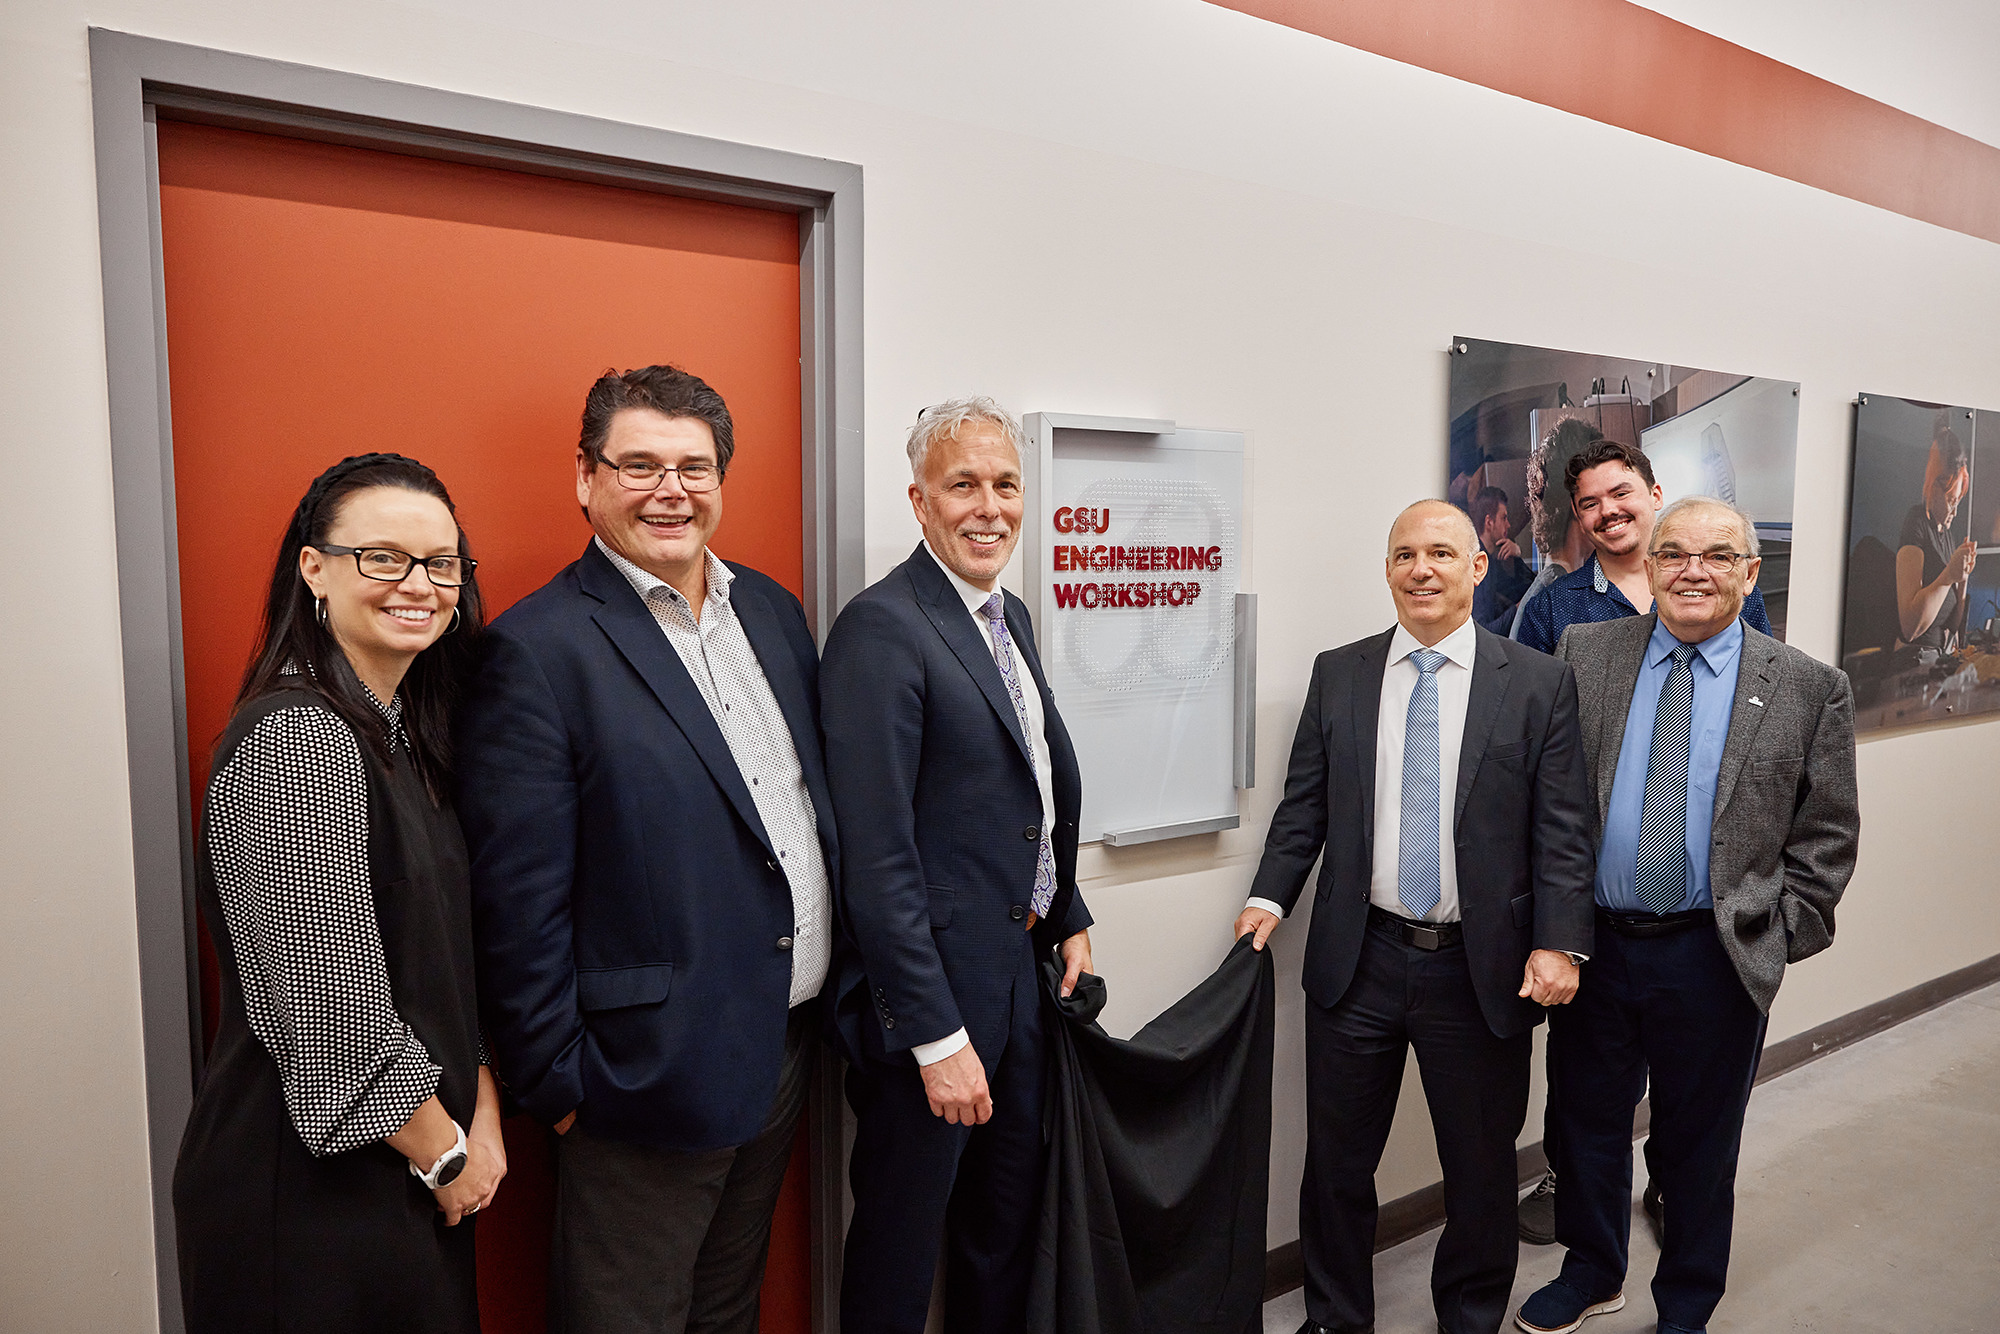 Greater Sudbury Utilities quyên góp 100.000 USD cho Phòng thí nghiệm xe điện của trường New Cambrian College